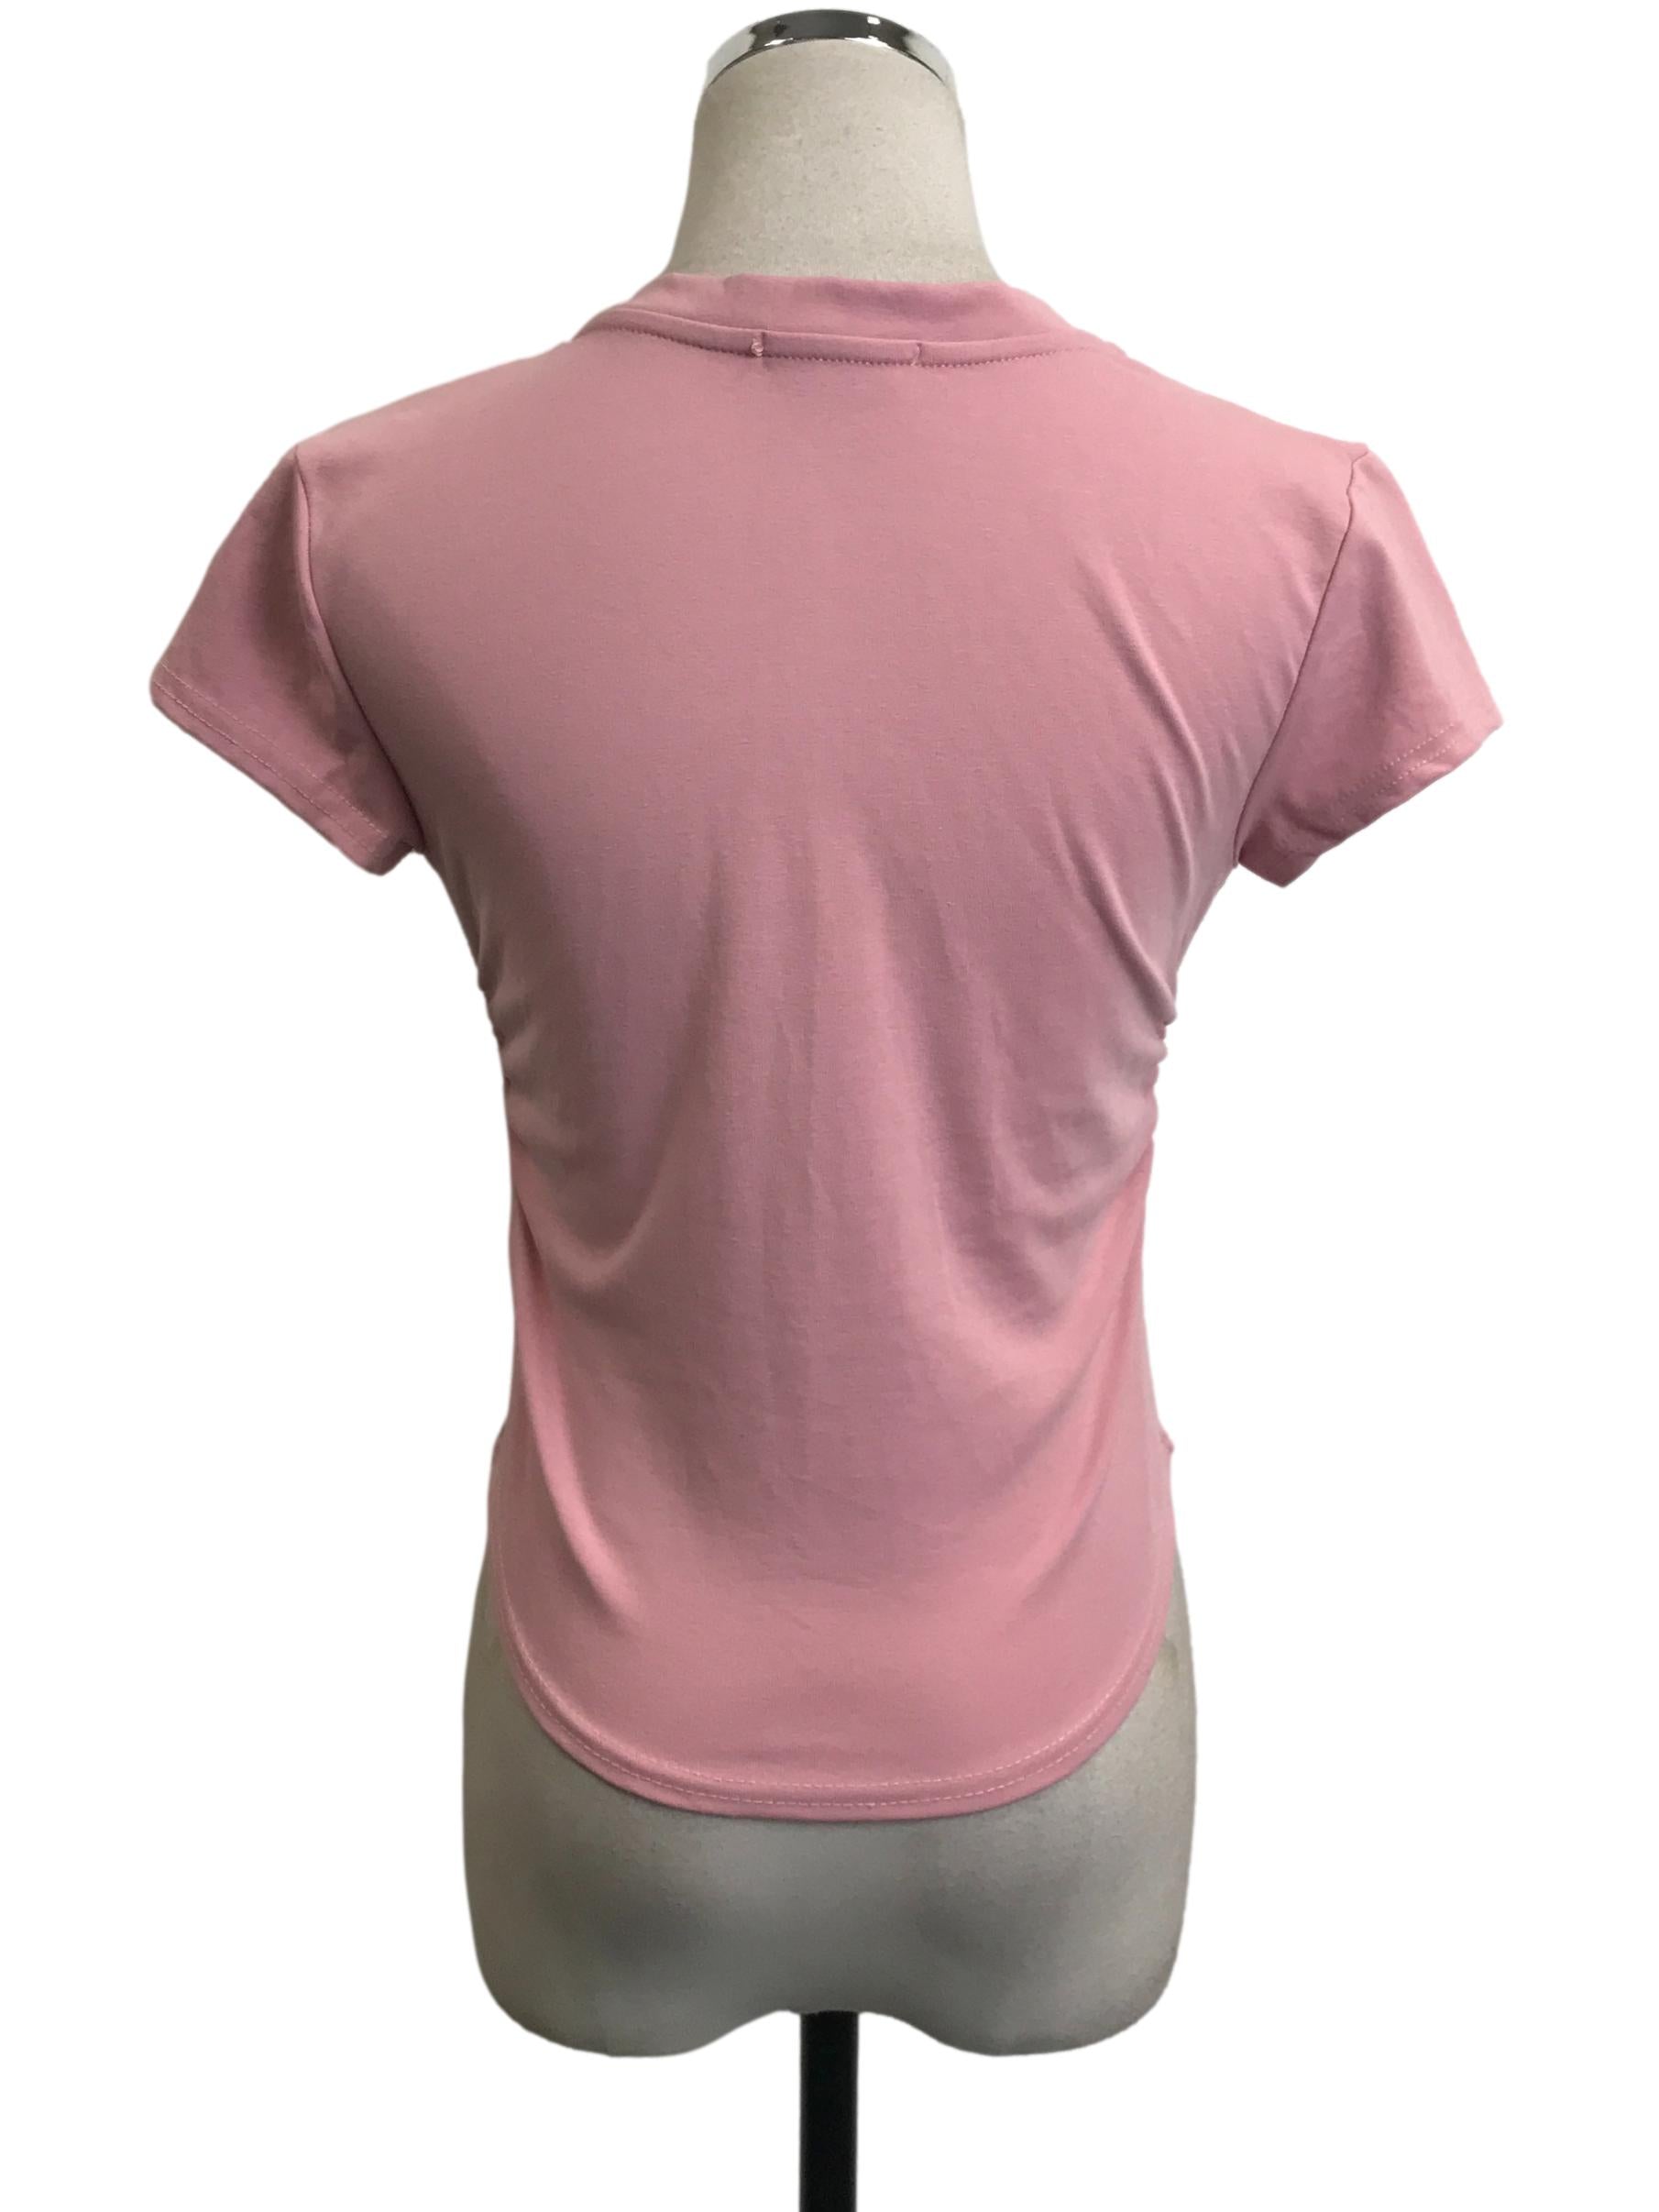 Pink V-Neck Short Sleeve Top